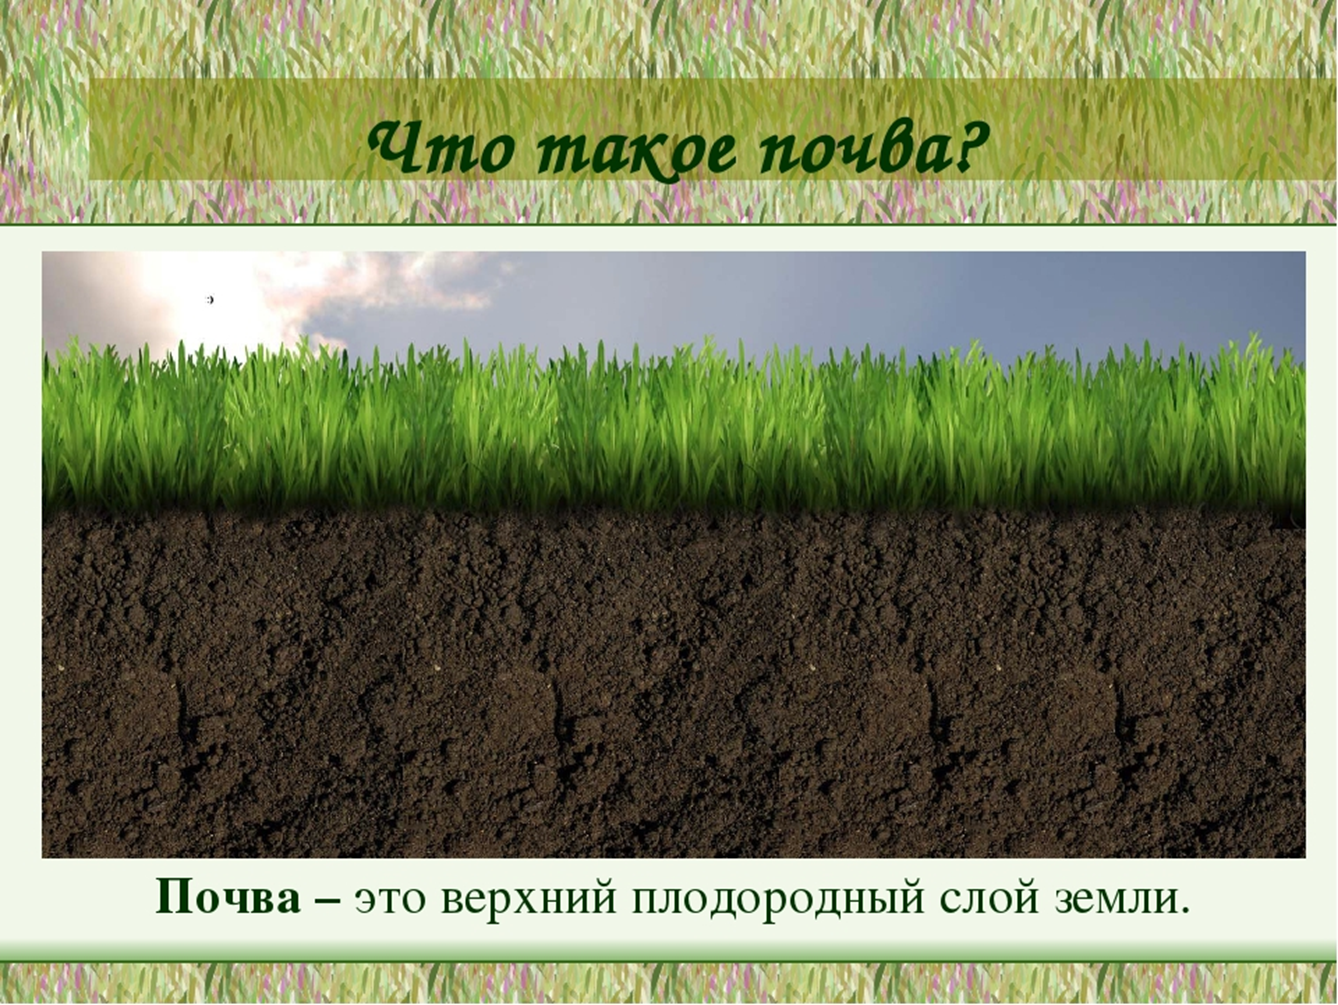 Верхние слои земли называют. Почва. Плодородный слой почвы. Почвенный слой земли. Почва плодородный слой земли.